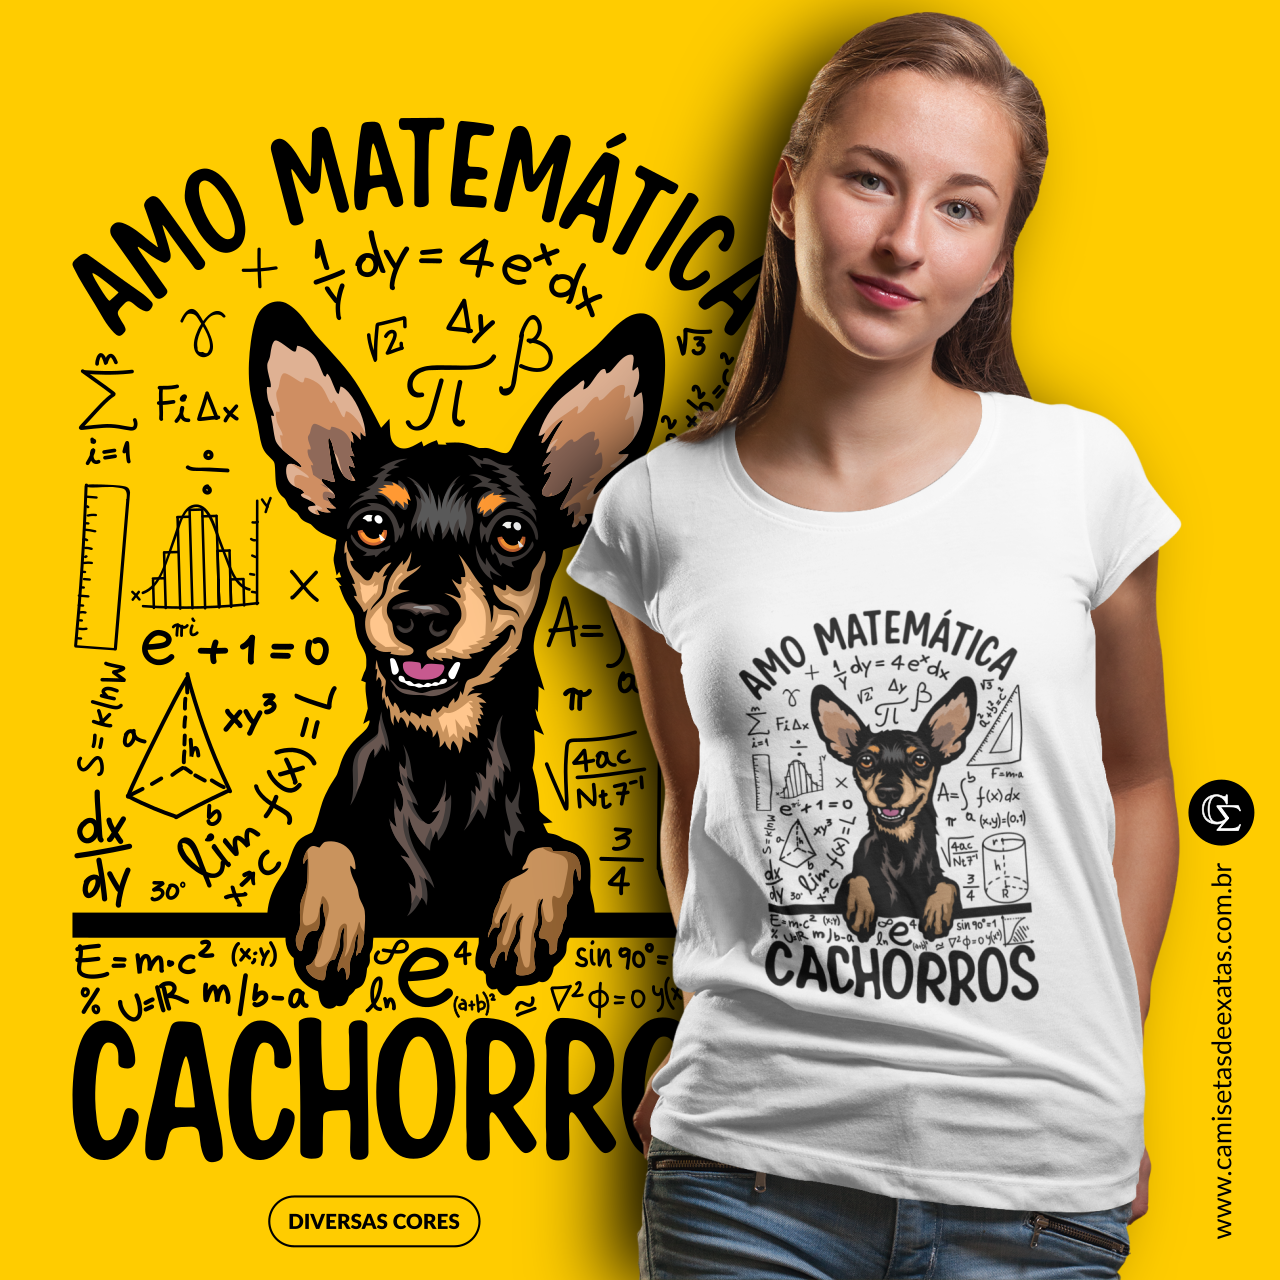 Amo Matemática e cachorros [6] [Pincher]